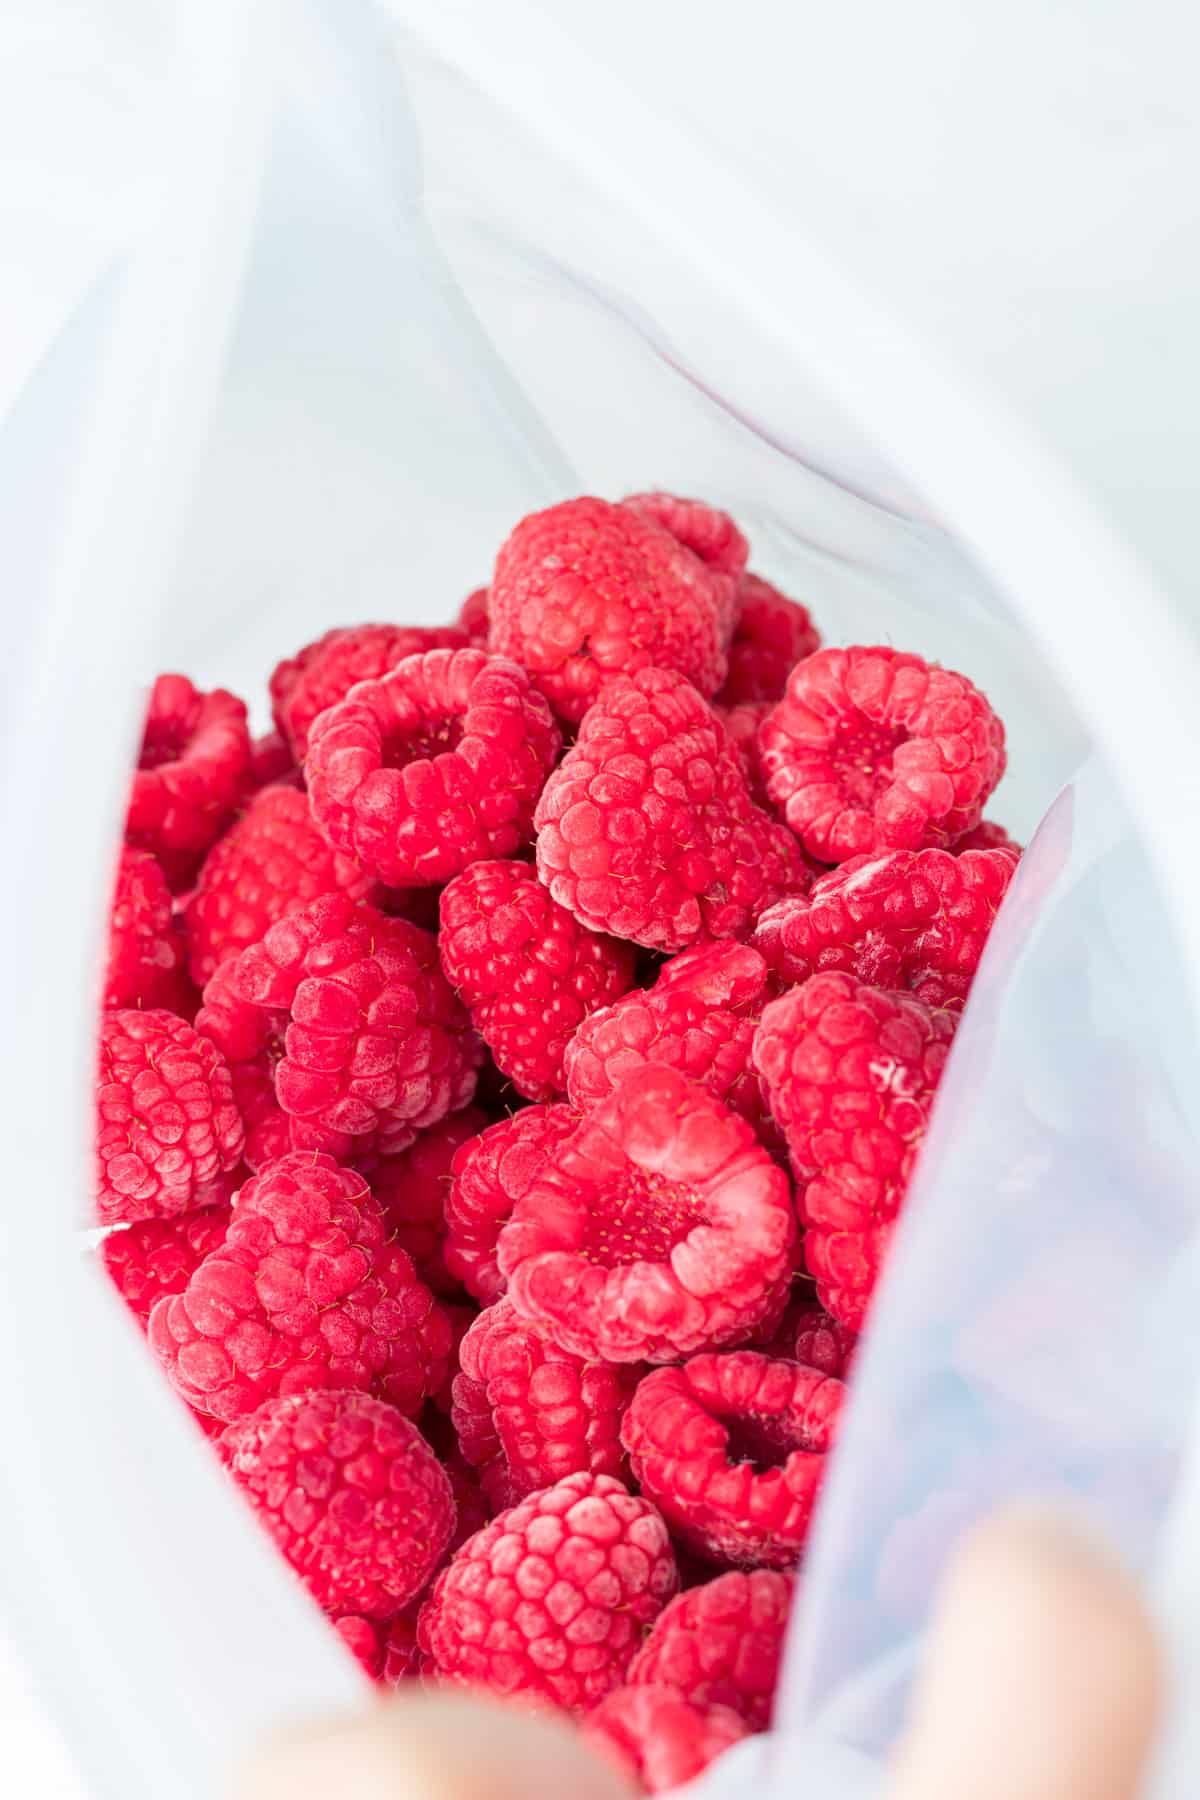 Open bag of frozen raspberries.